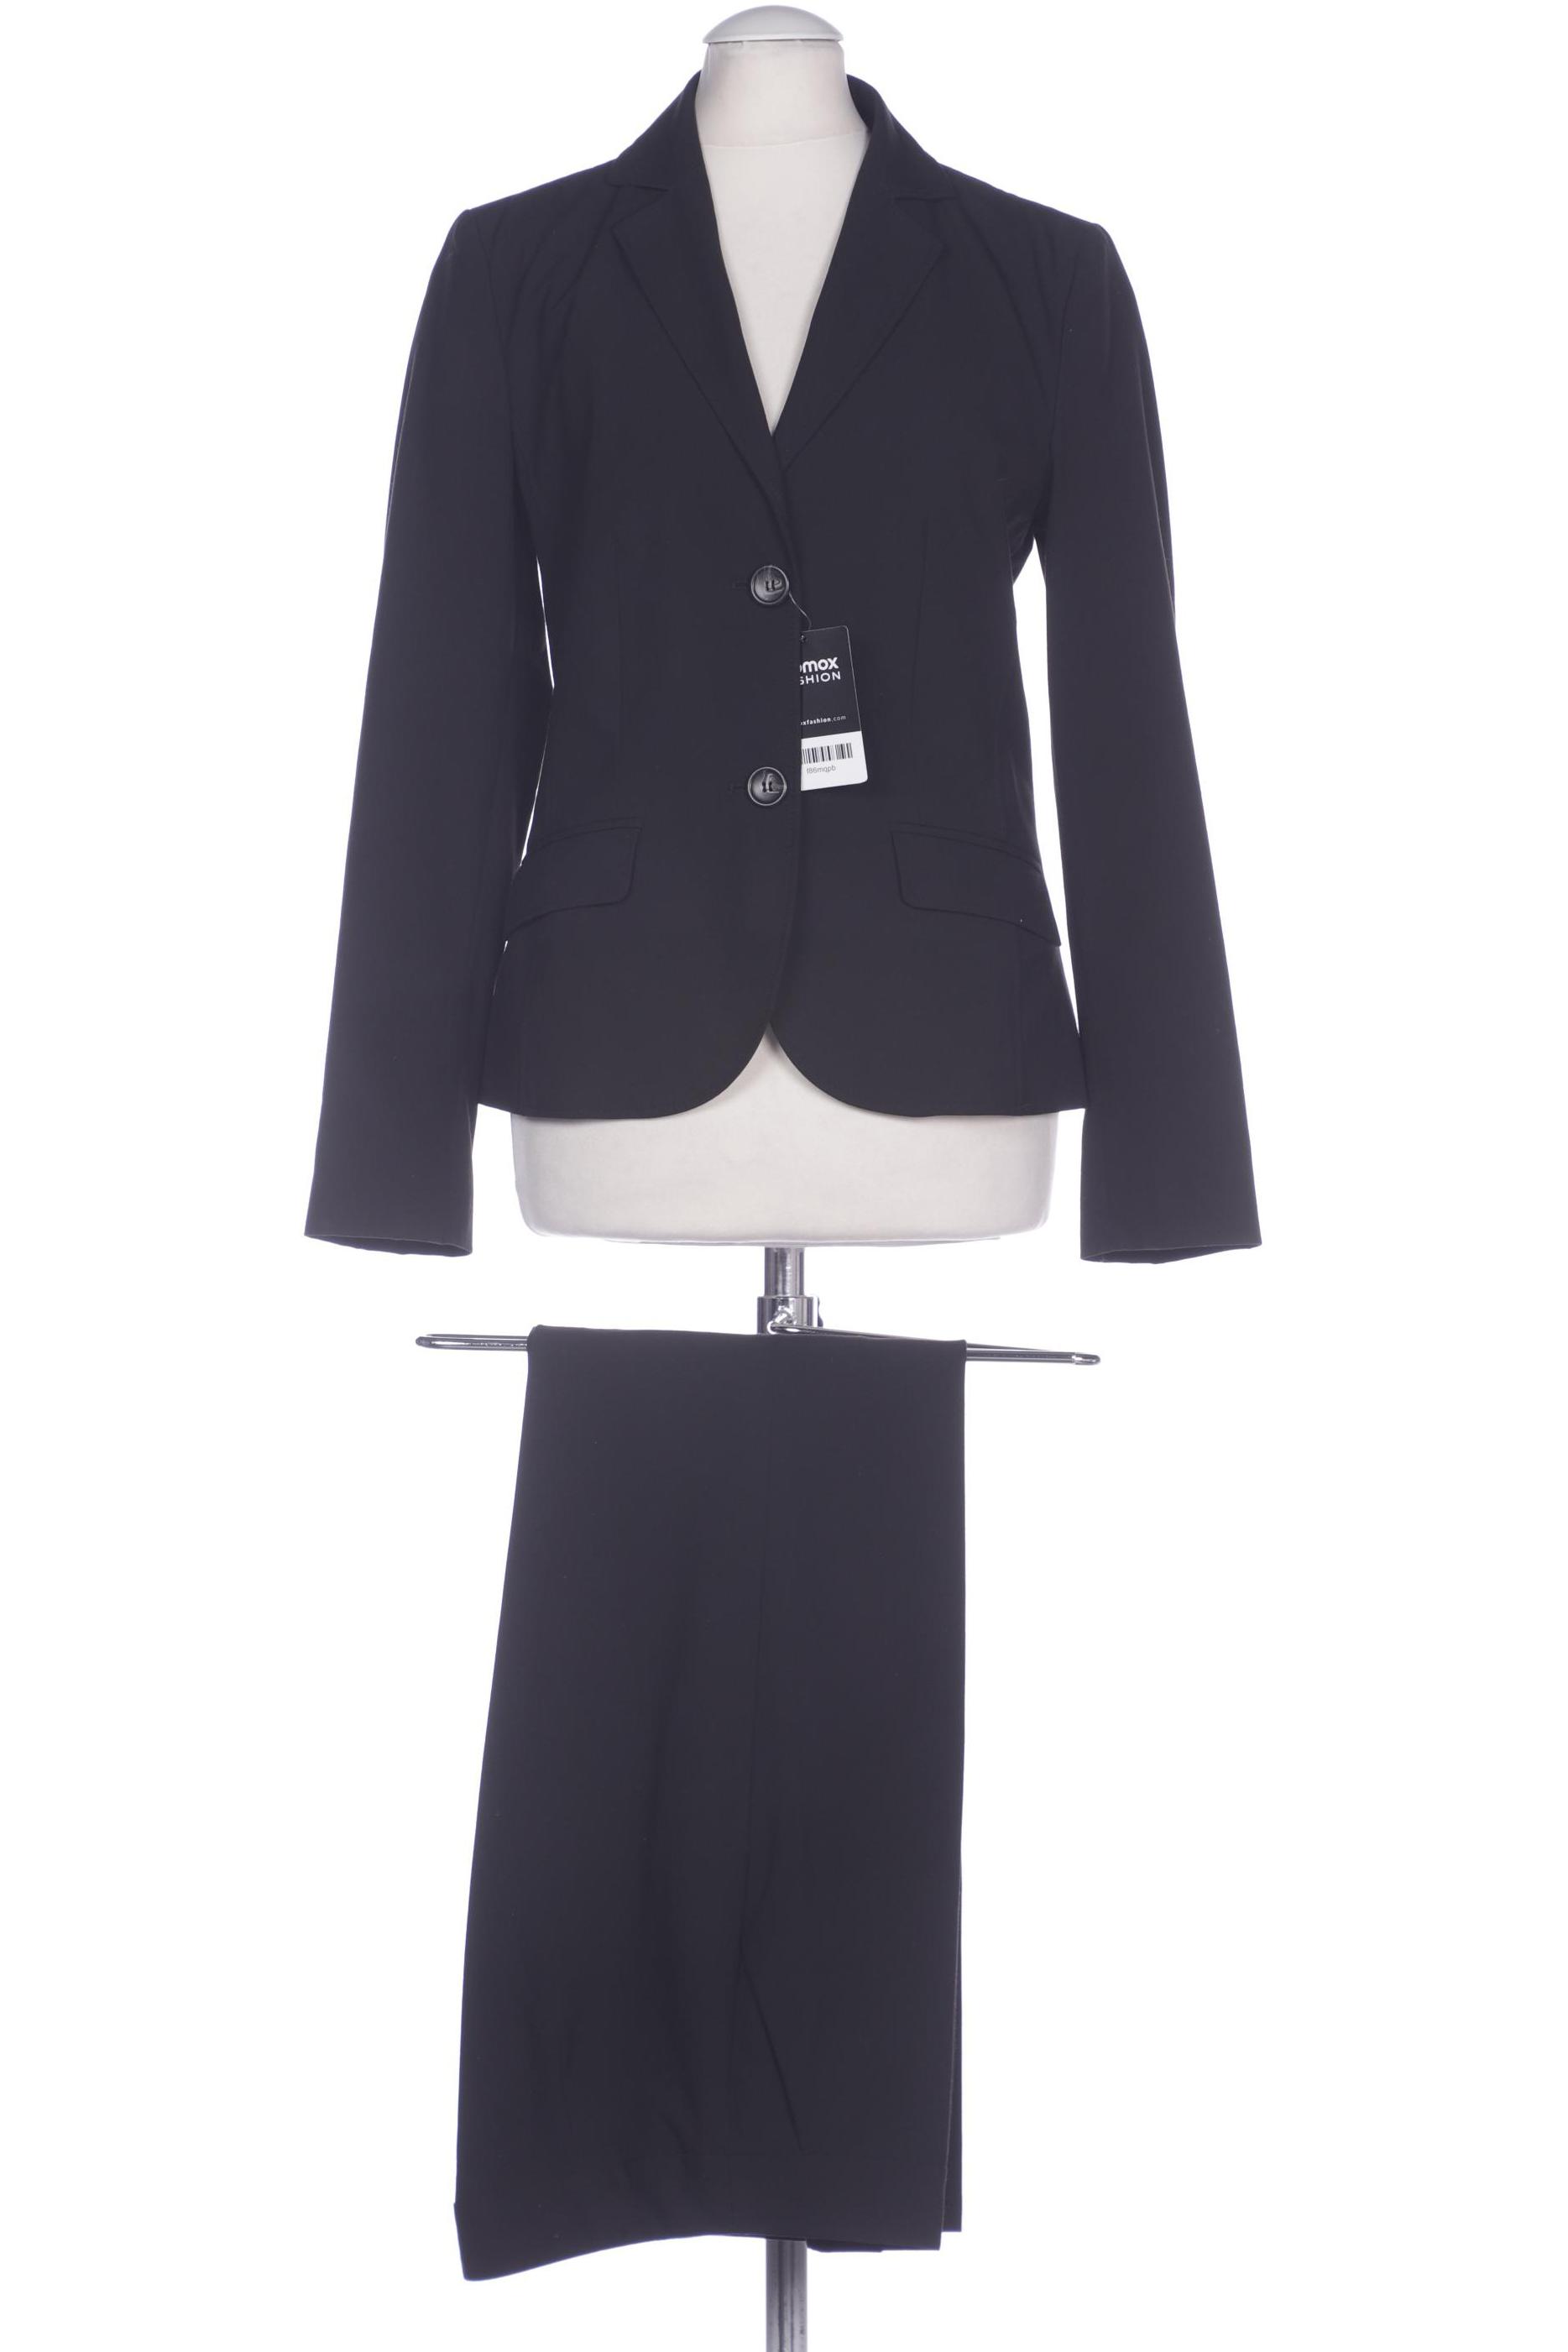 s.Oliver Selection Damen Anzug, schwarz, Gr. 34 von s.Oliver Selection